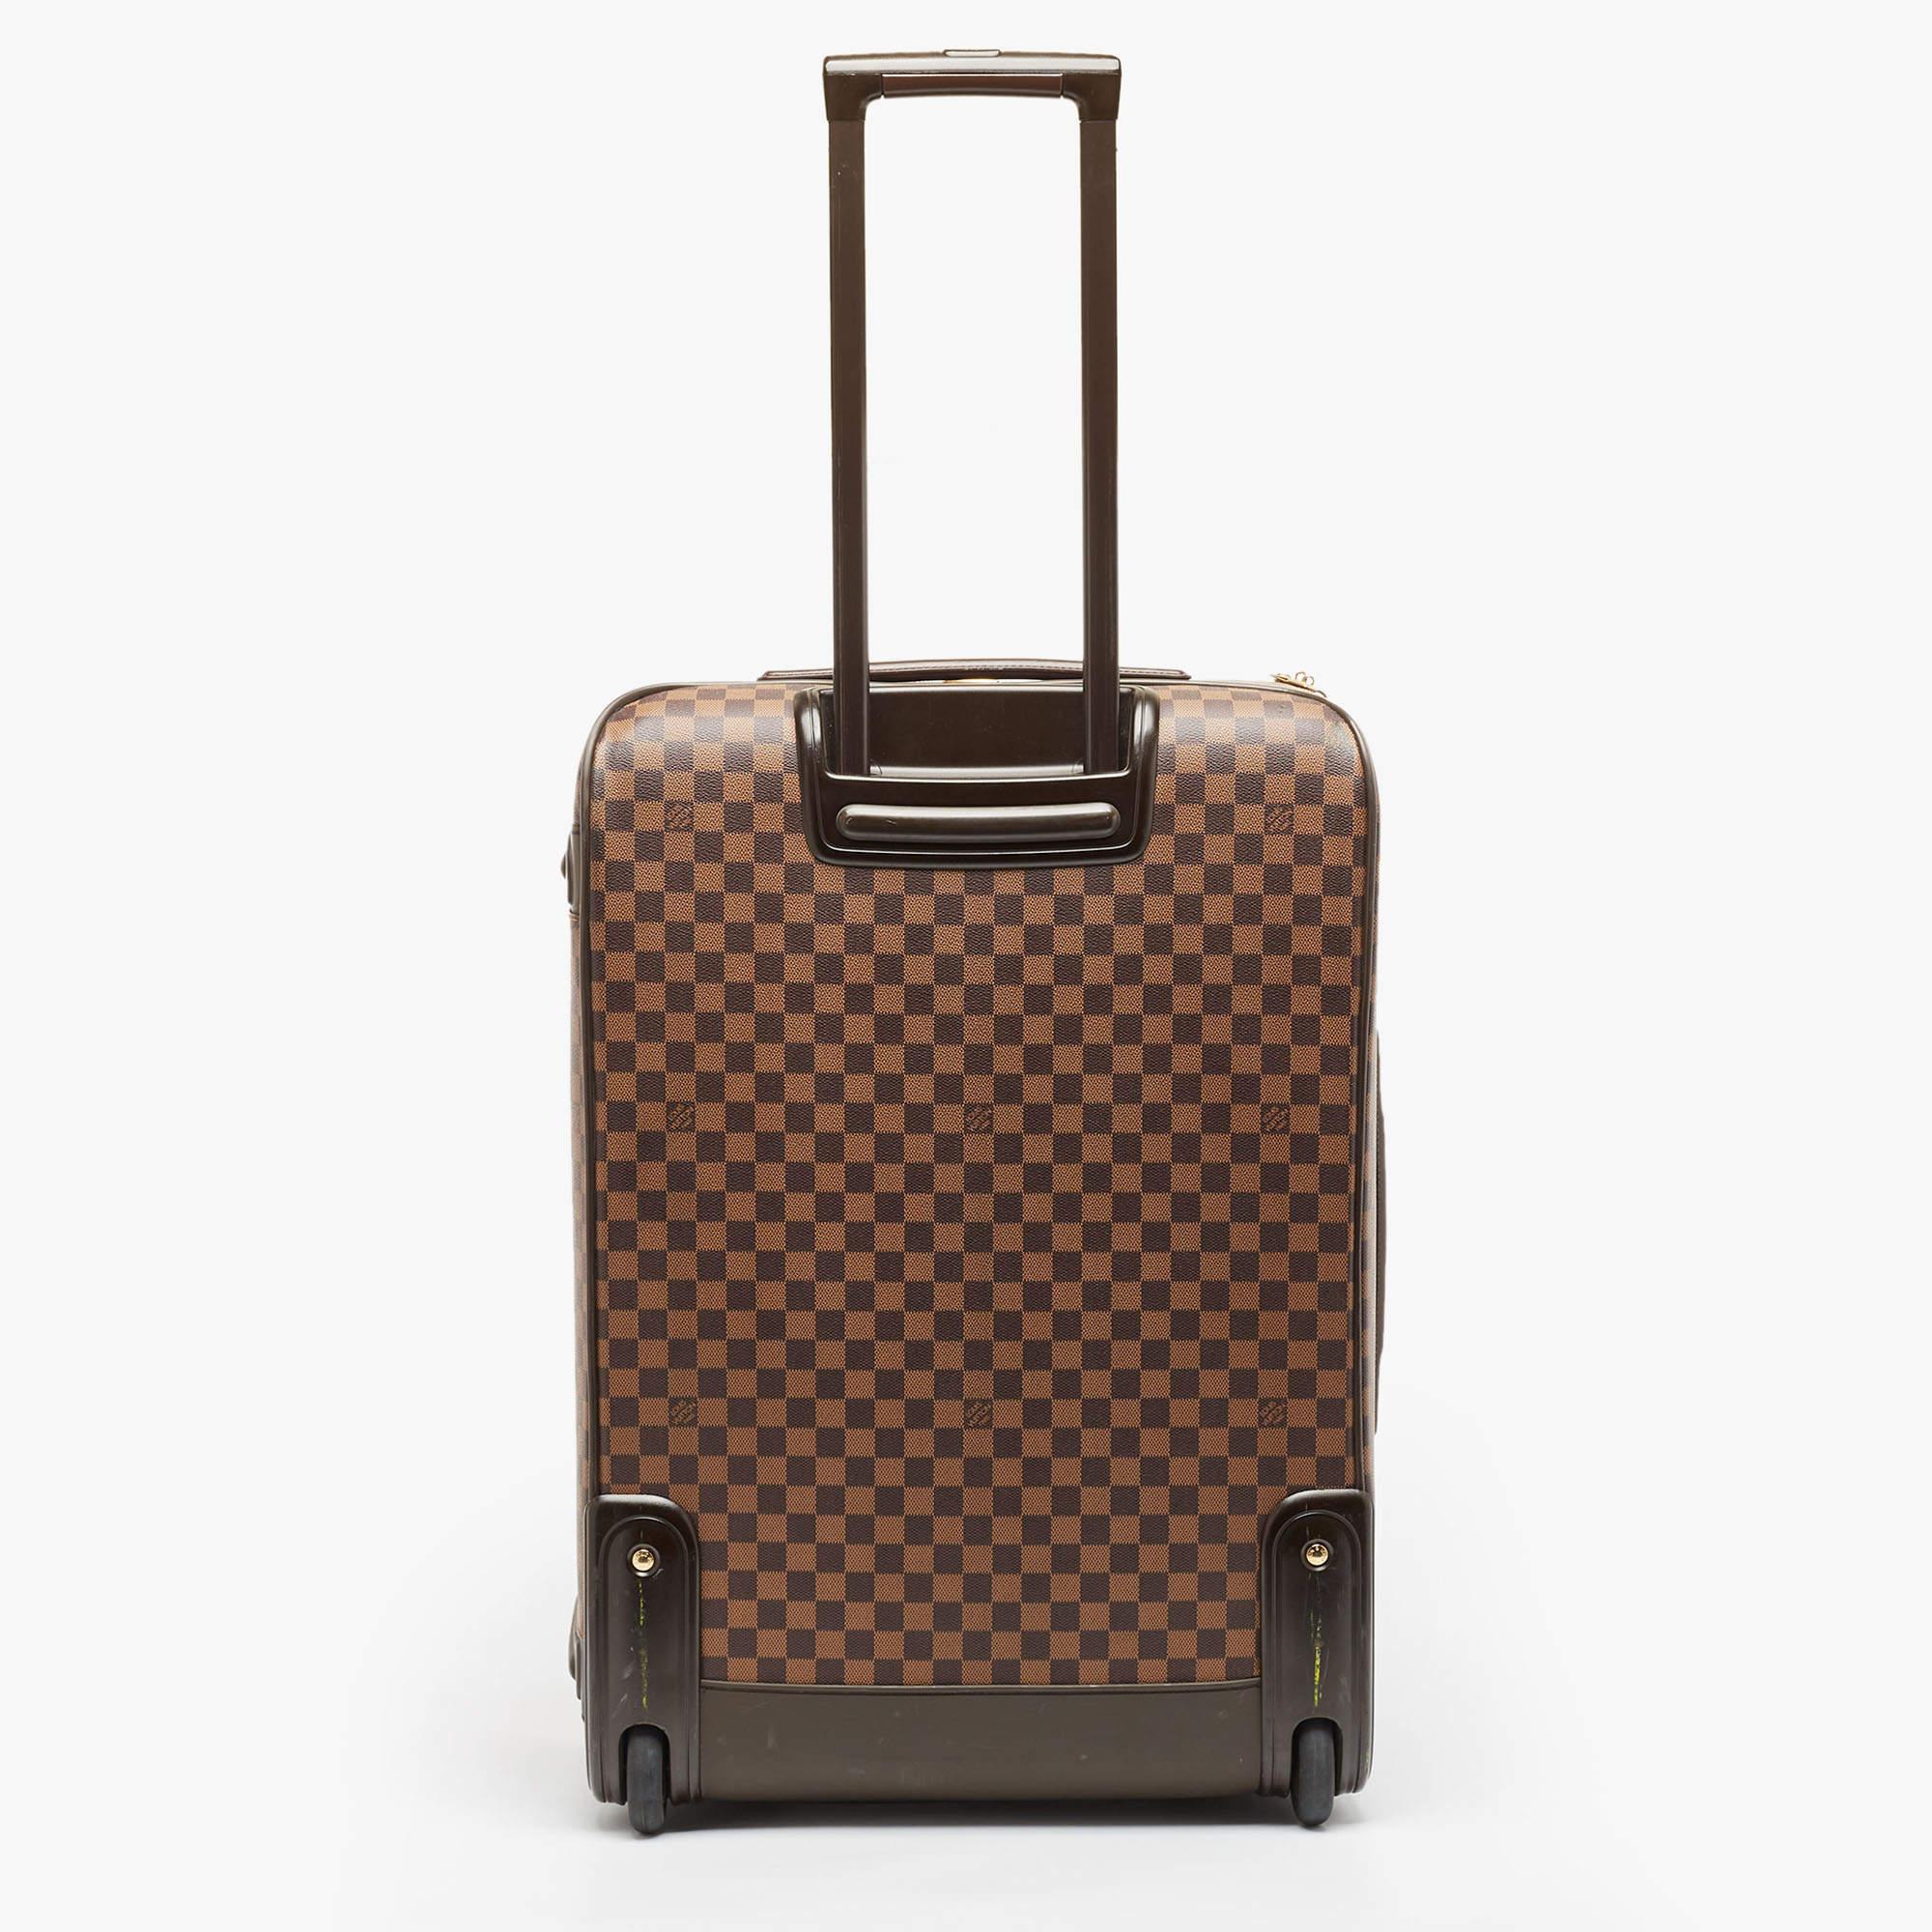 Die Taschen von Louis Vuitton sind wegen ihres hohen Stils und ihrer Funktionalität beliebt. Diese Reisetasche ist, wie alle ihre Entwürfe, robust und stilvoll. Mit seinem edlen Finish soll er ein luxuriöses Erlebnis bieten.

Enthält: